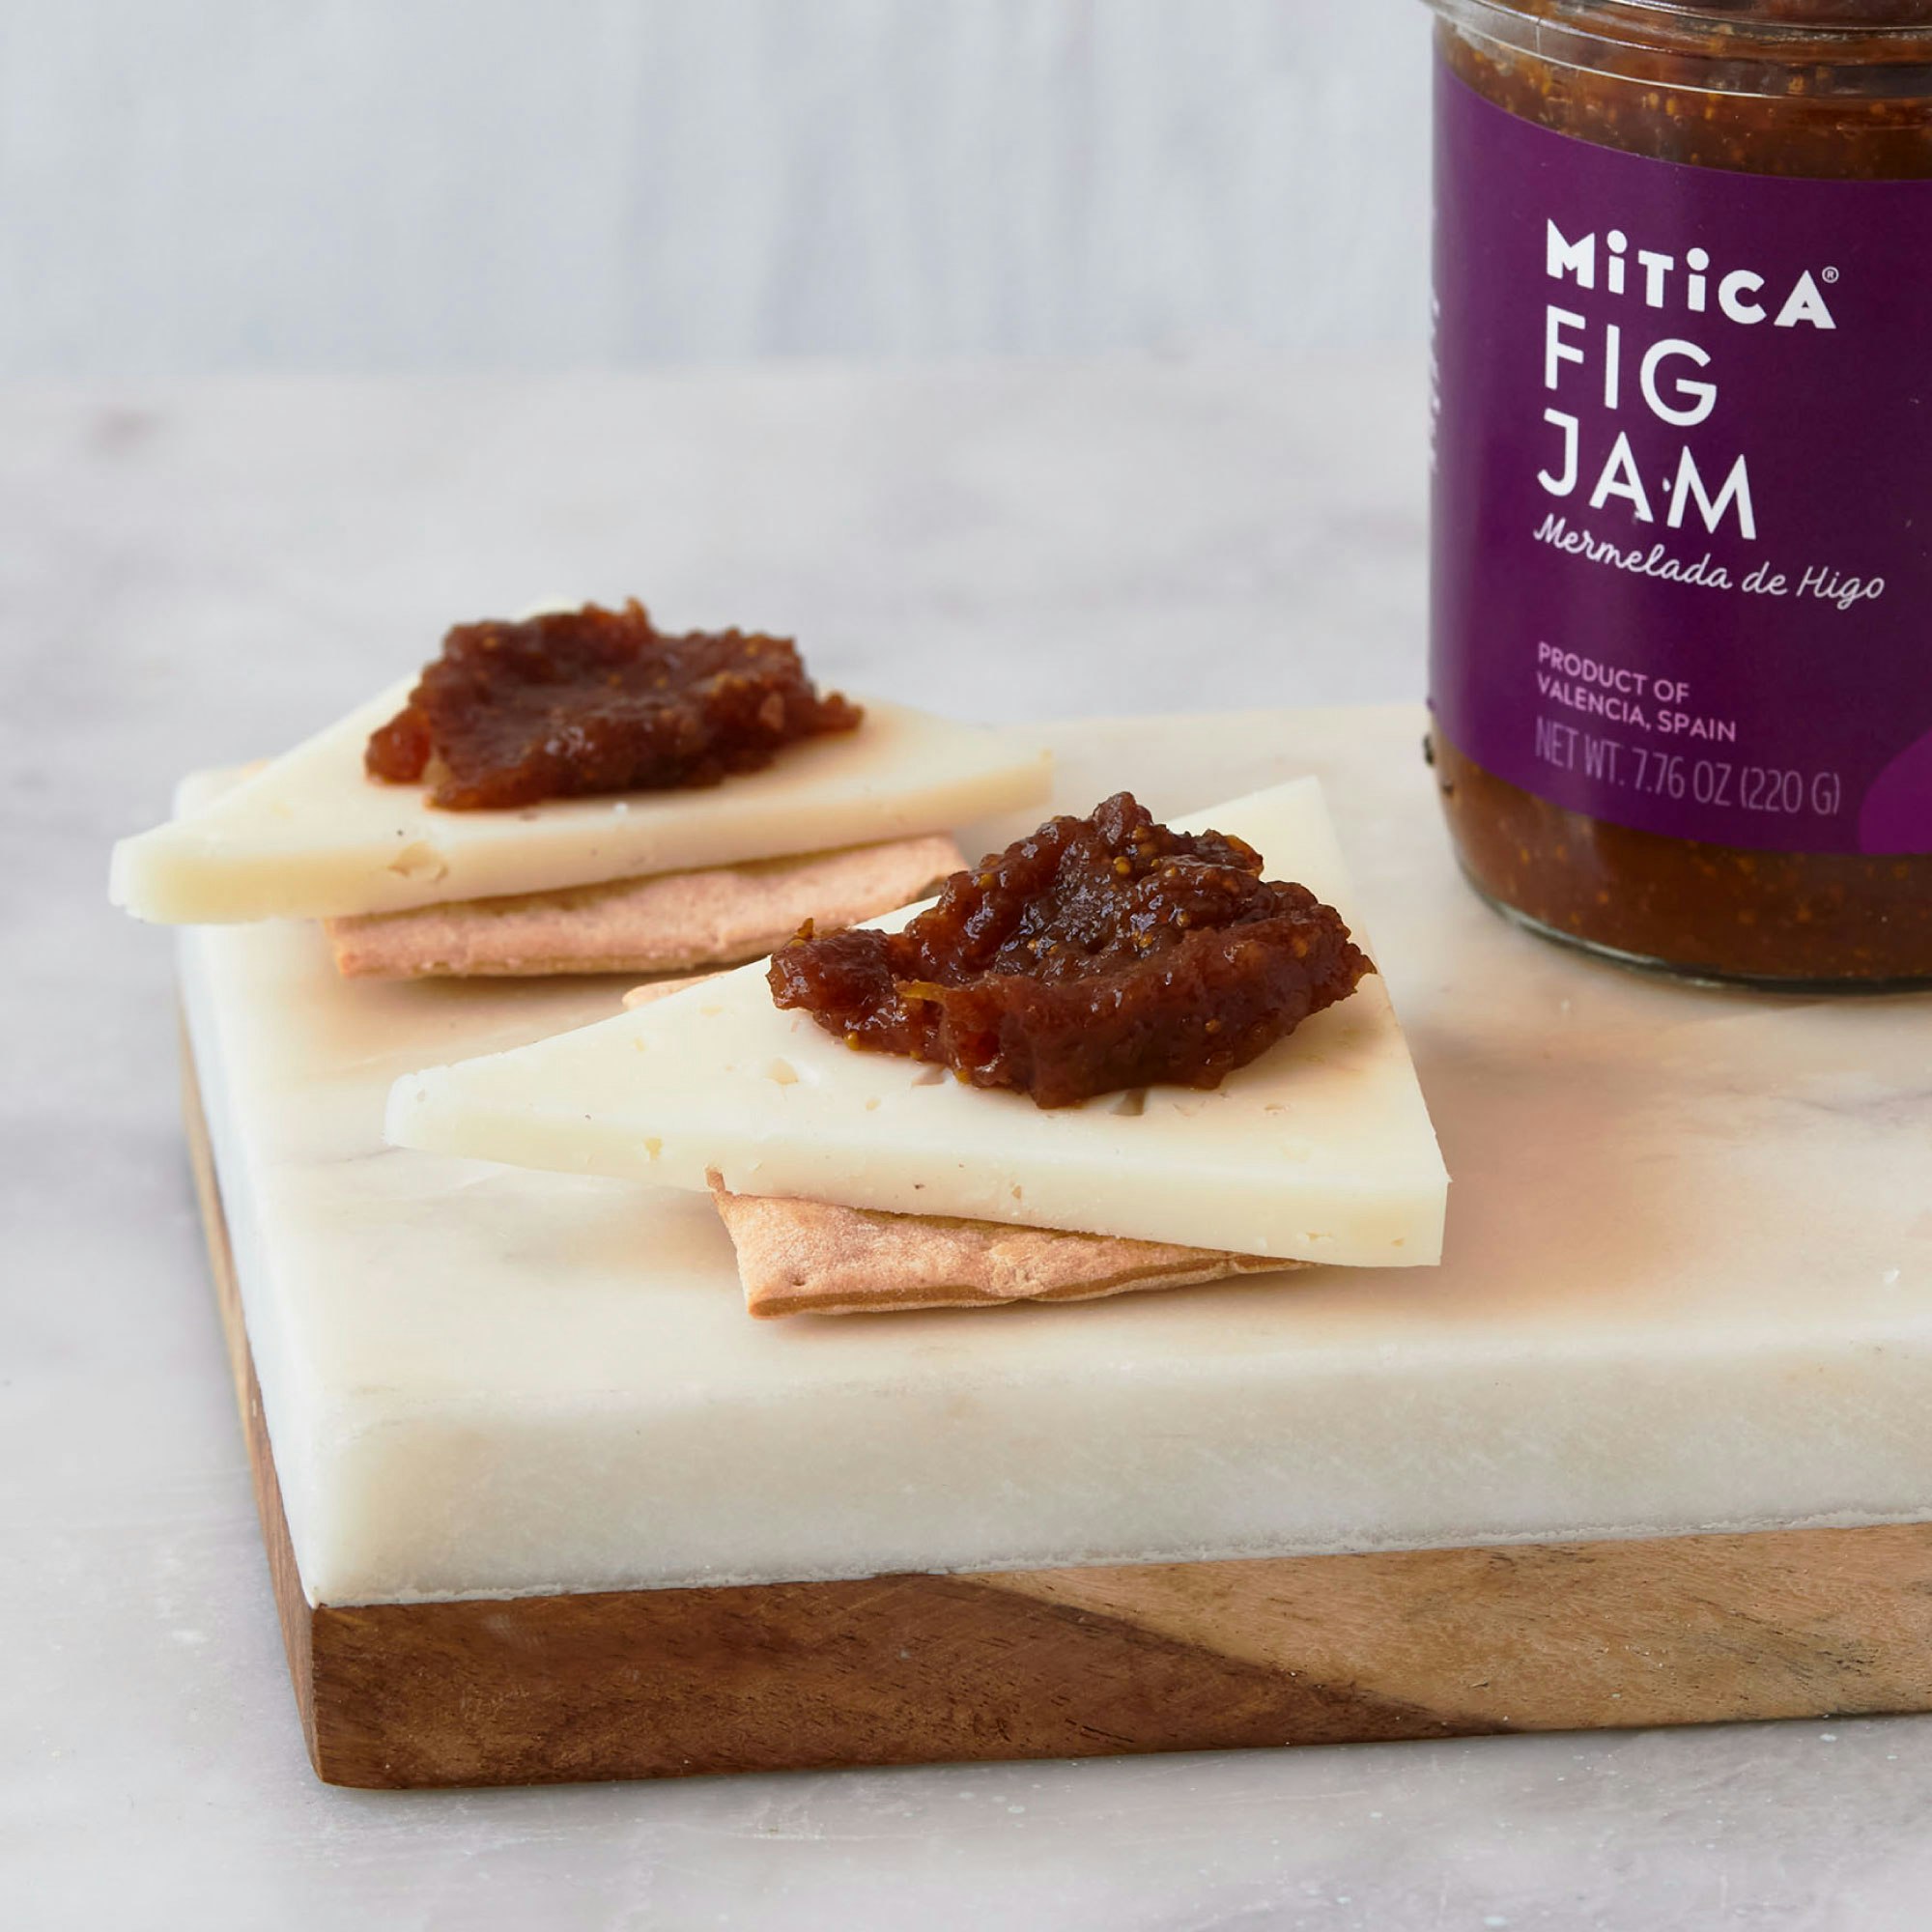 mitica fig jam specialty foods